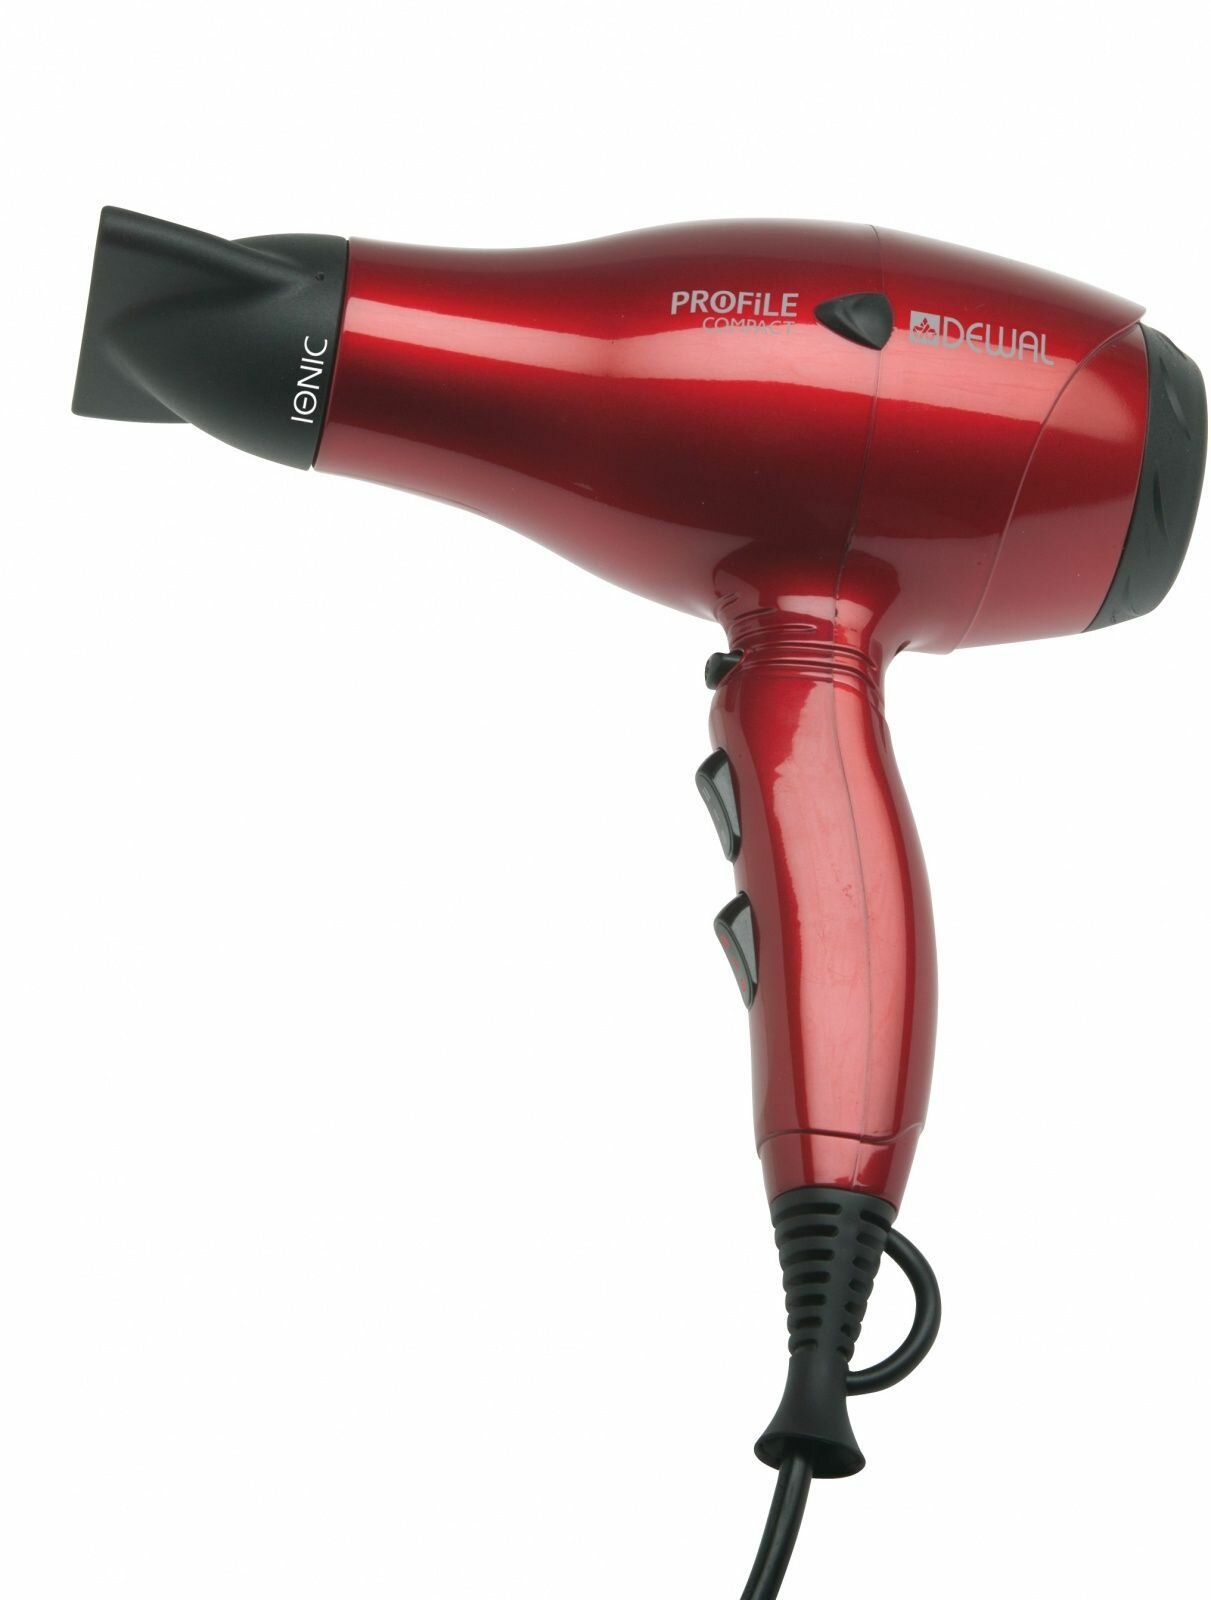 Фен для волос Dewal Profile Compact 03-119 Red система ионизации 2000 Ватт